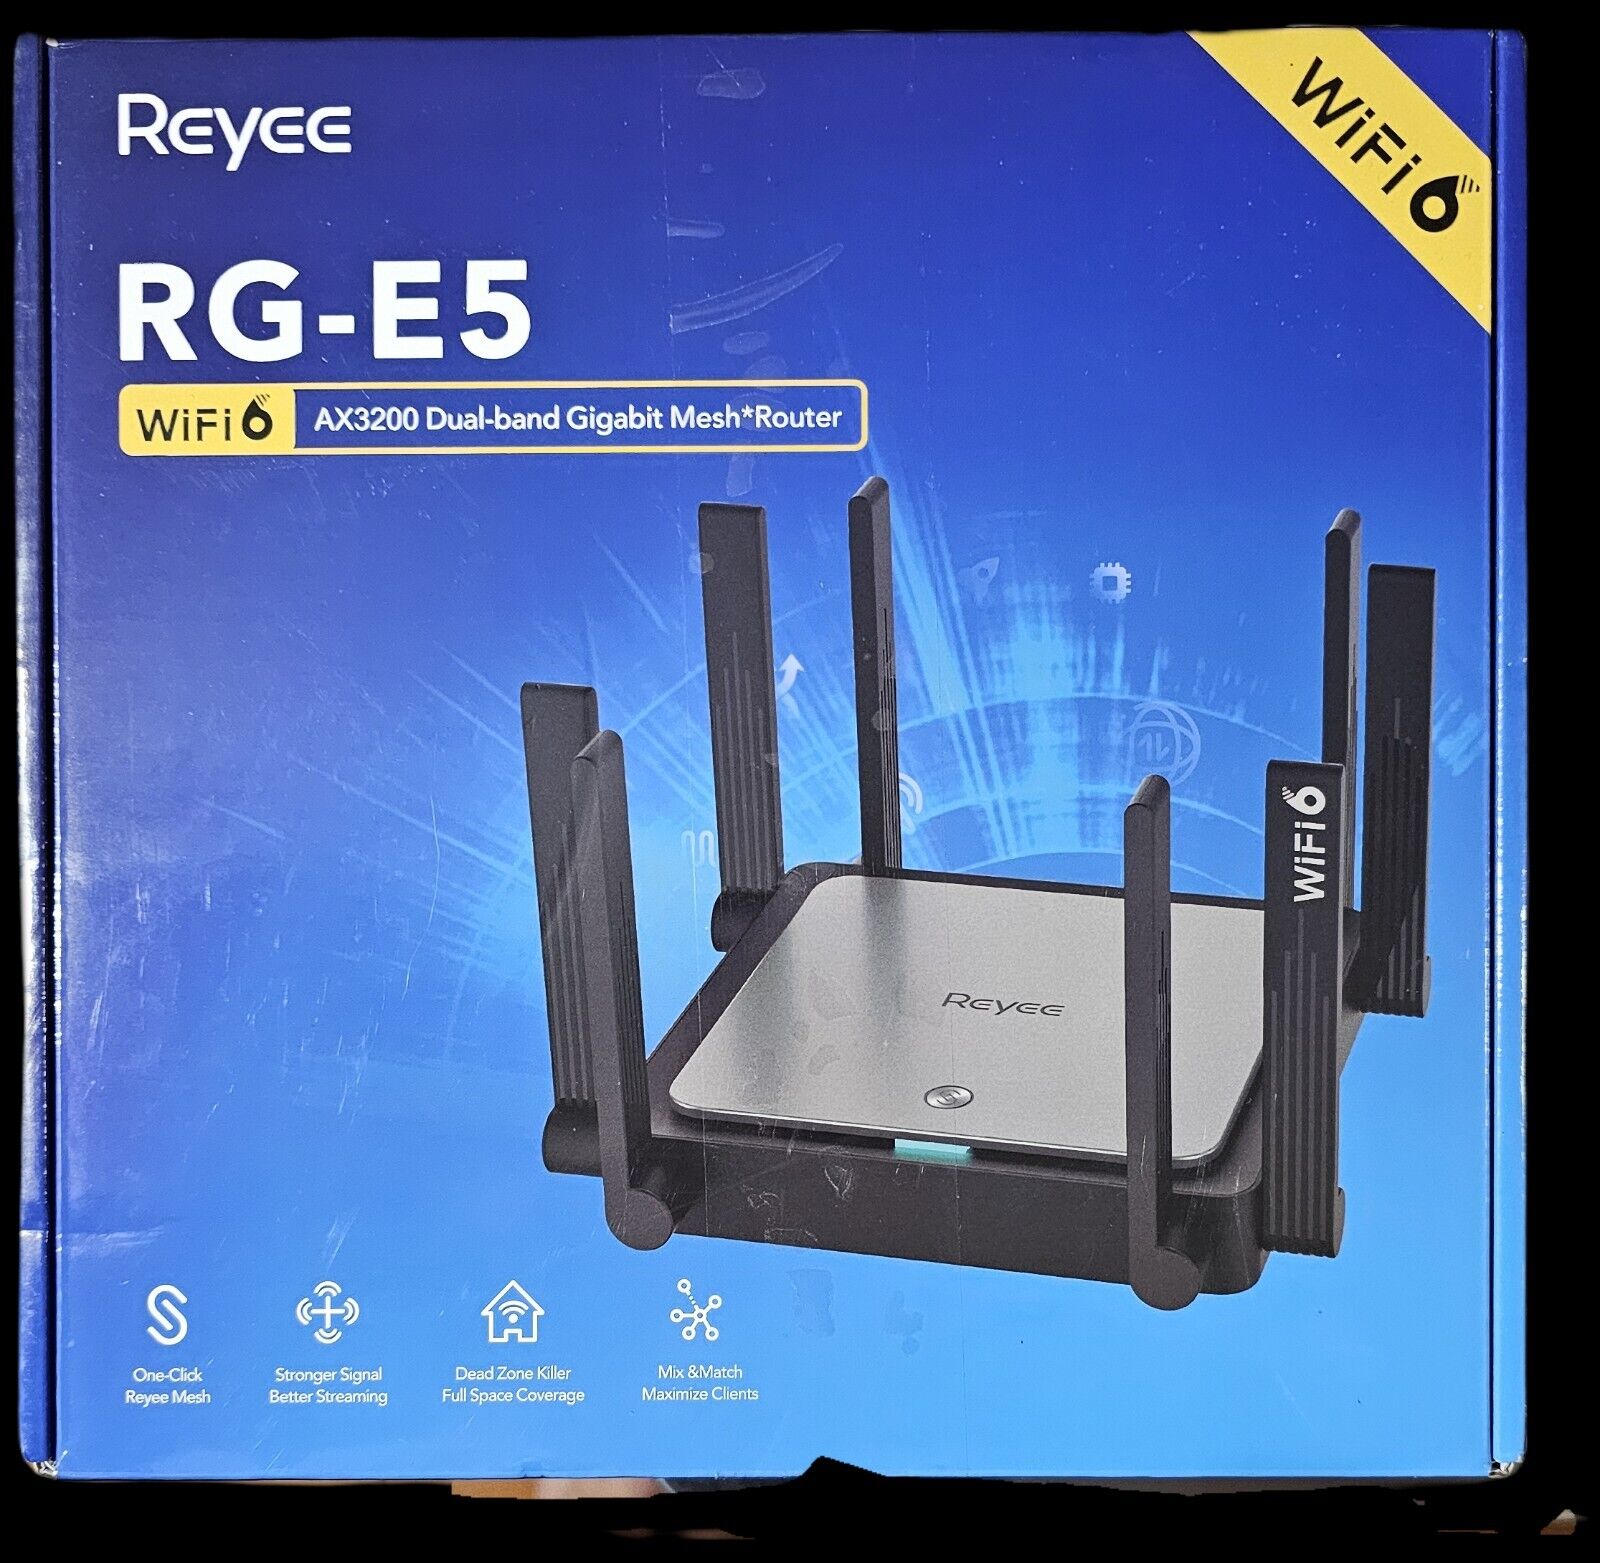 WiFi 6 High Speed Router Reyee AX3200 RG-E5 Model E5 8 Omnidirectional Antennas